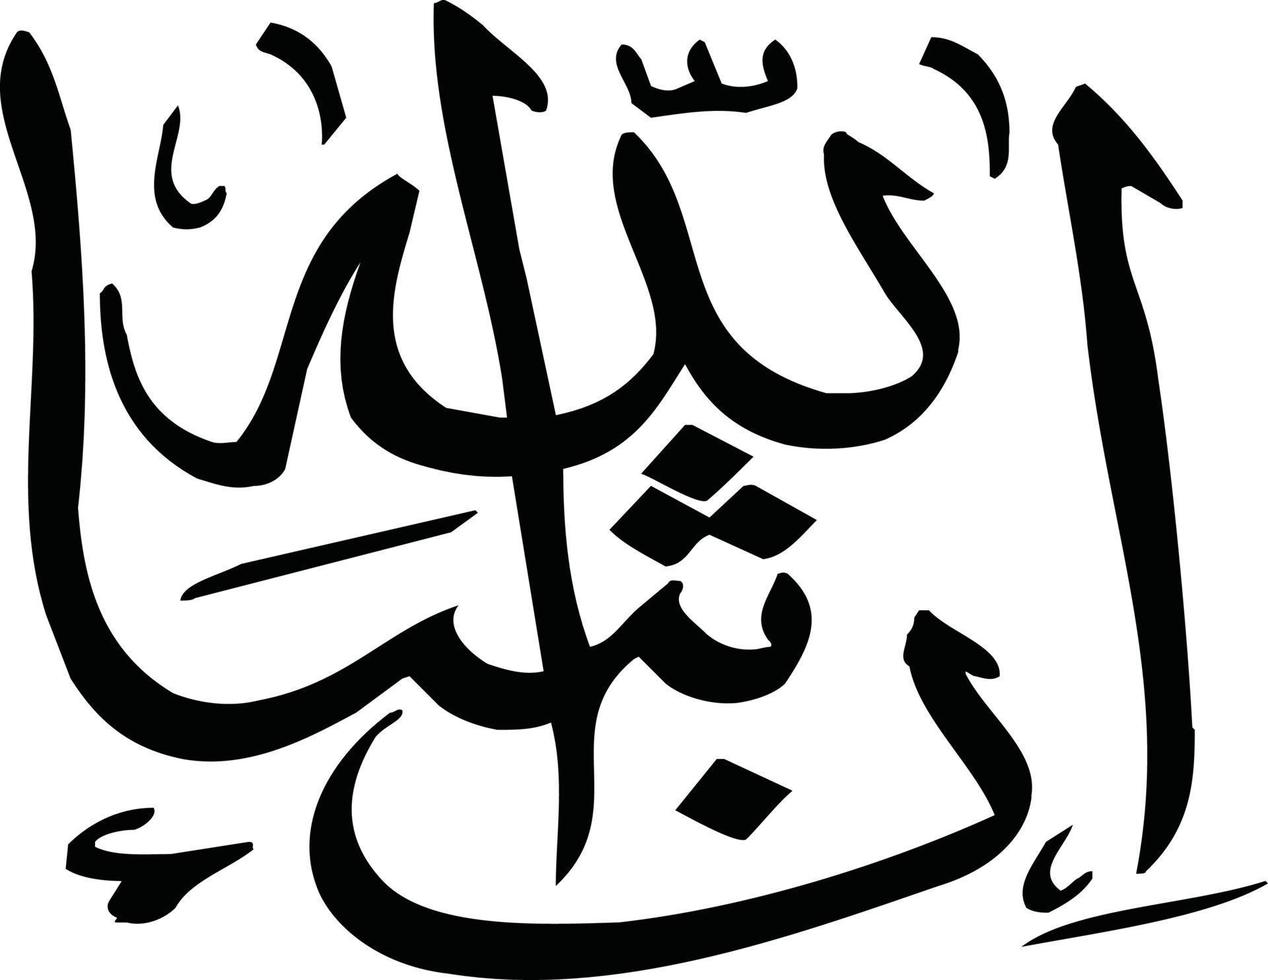 insha allaha caligrafía árabe islámica vector libre